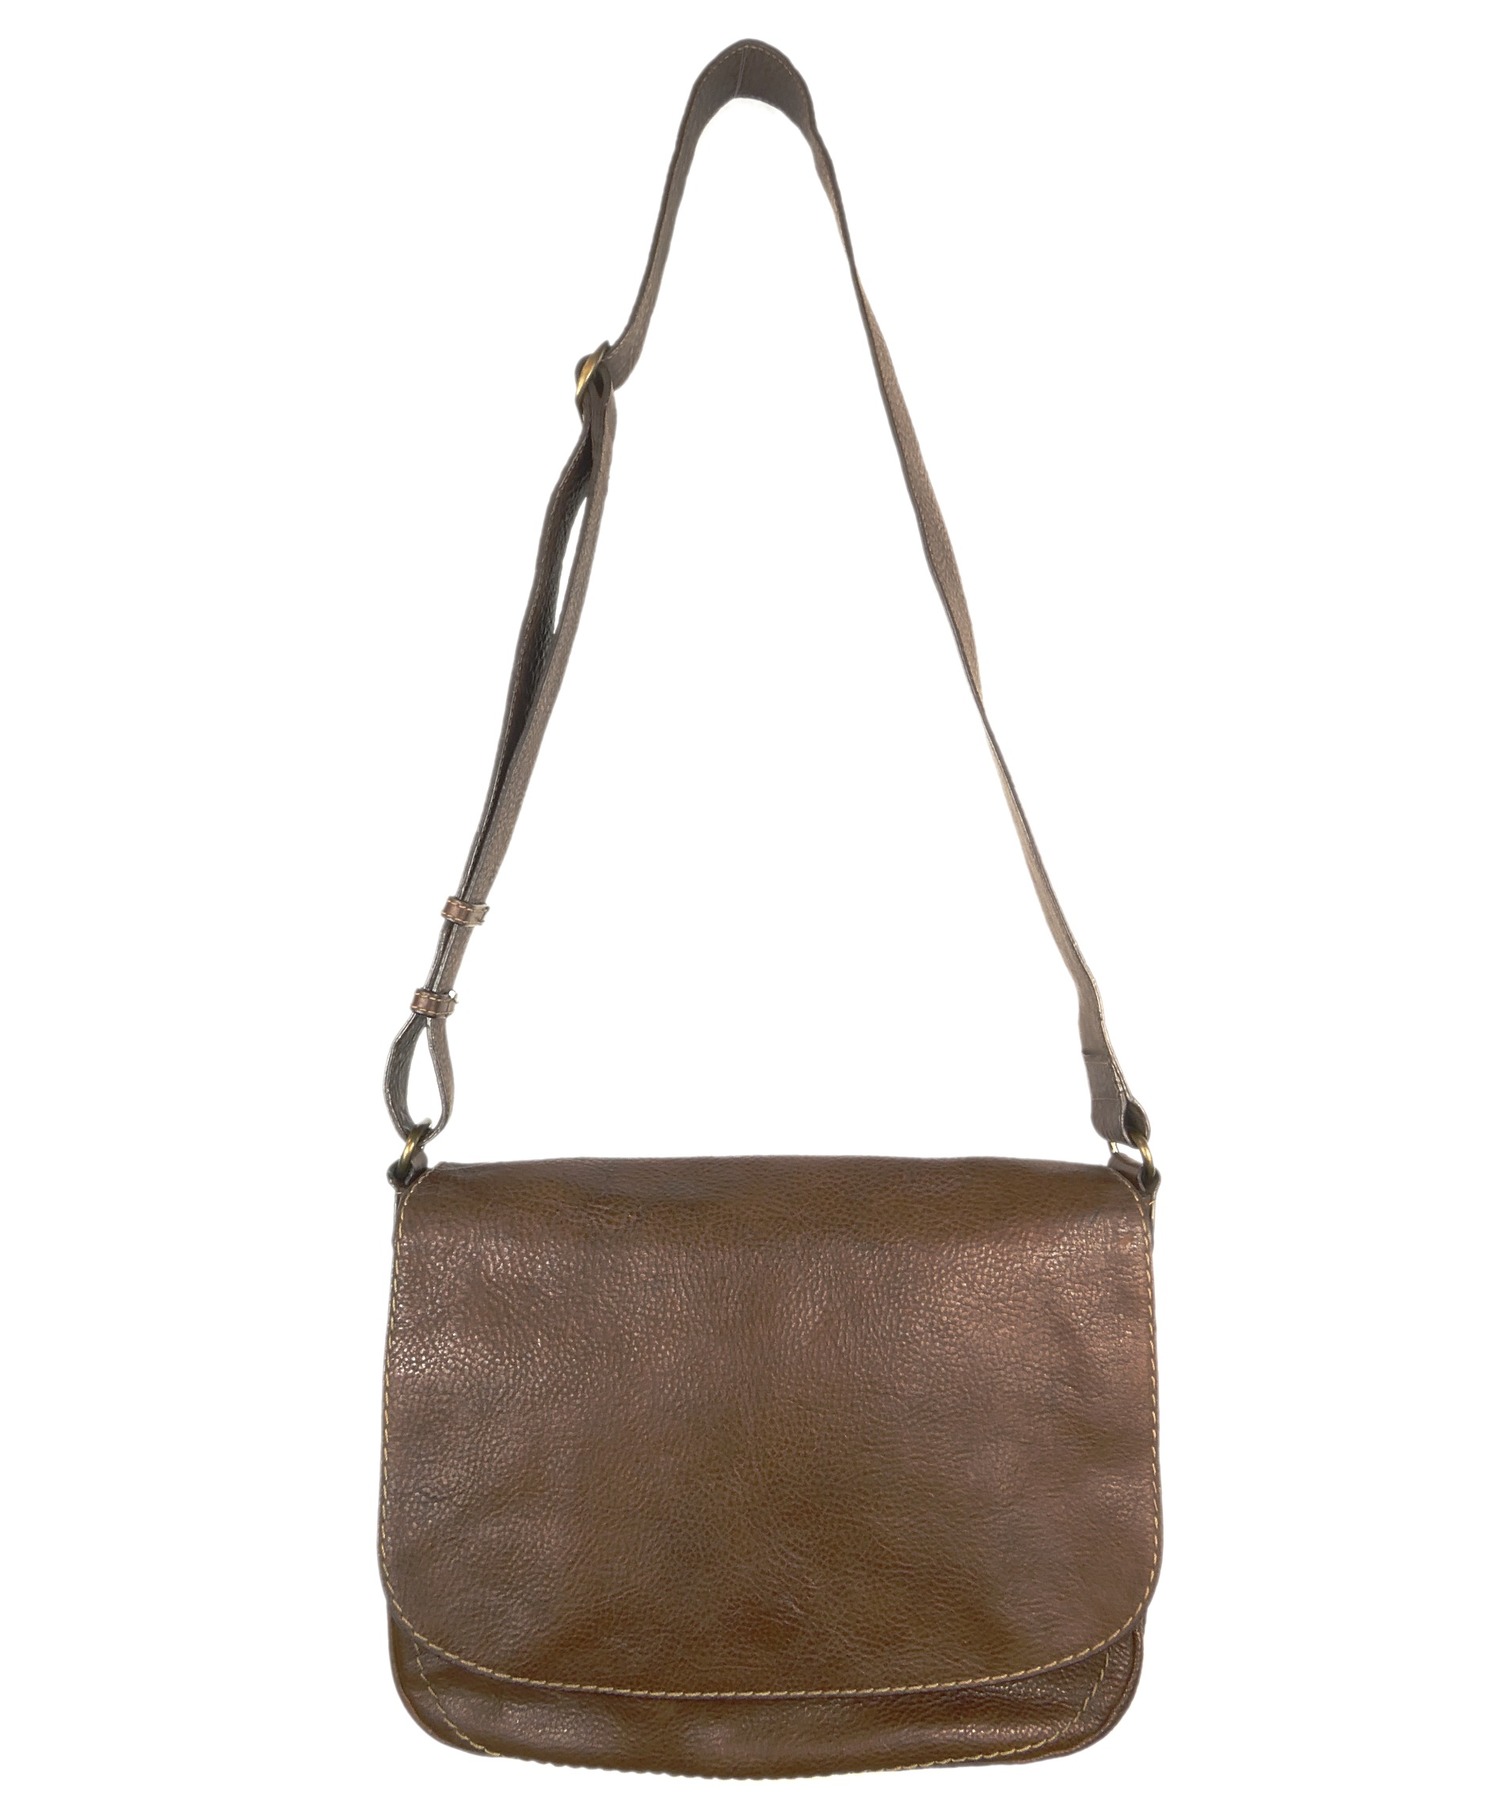 土屋鞄 (ツチヤカバン) トーンオイルヌメ ショルダー こげ茶 ブラウン サイズ:A4収納可